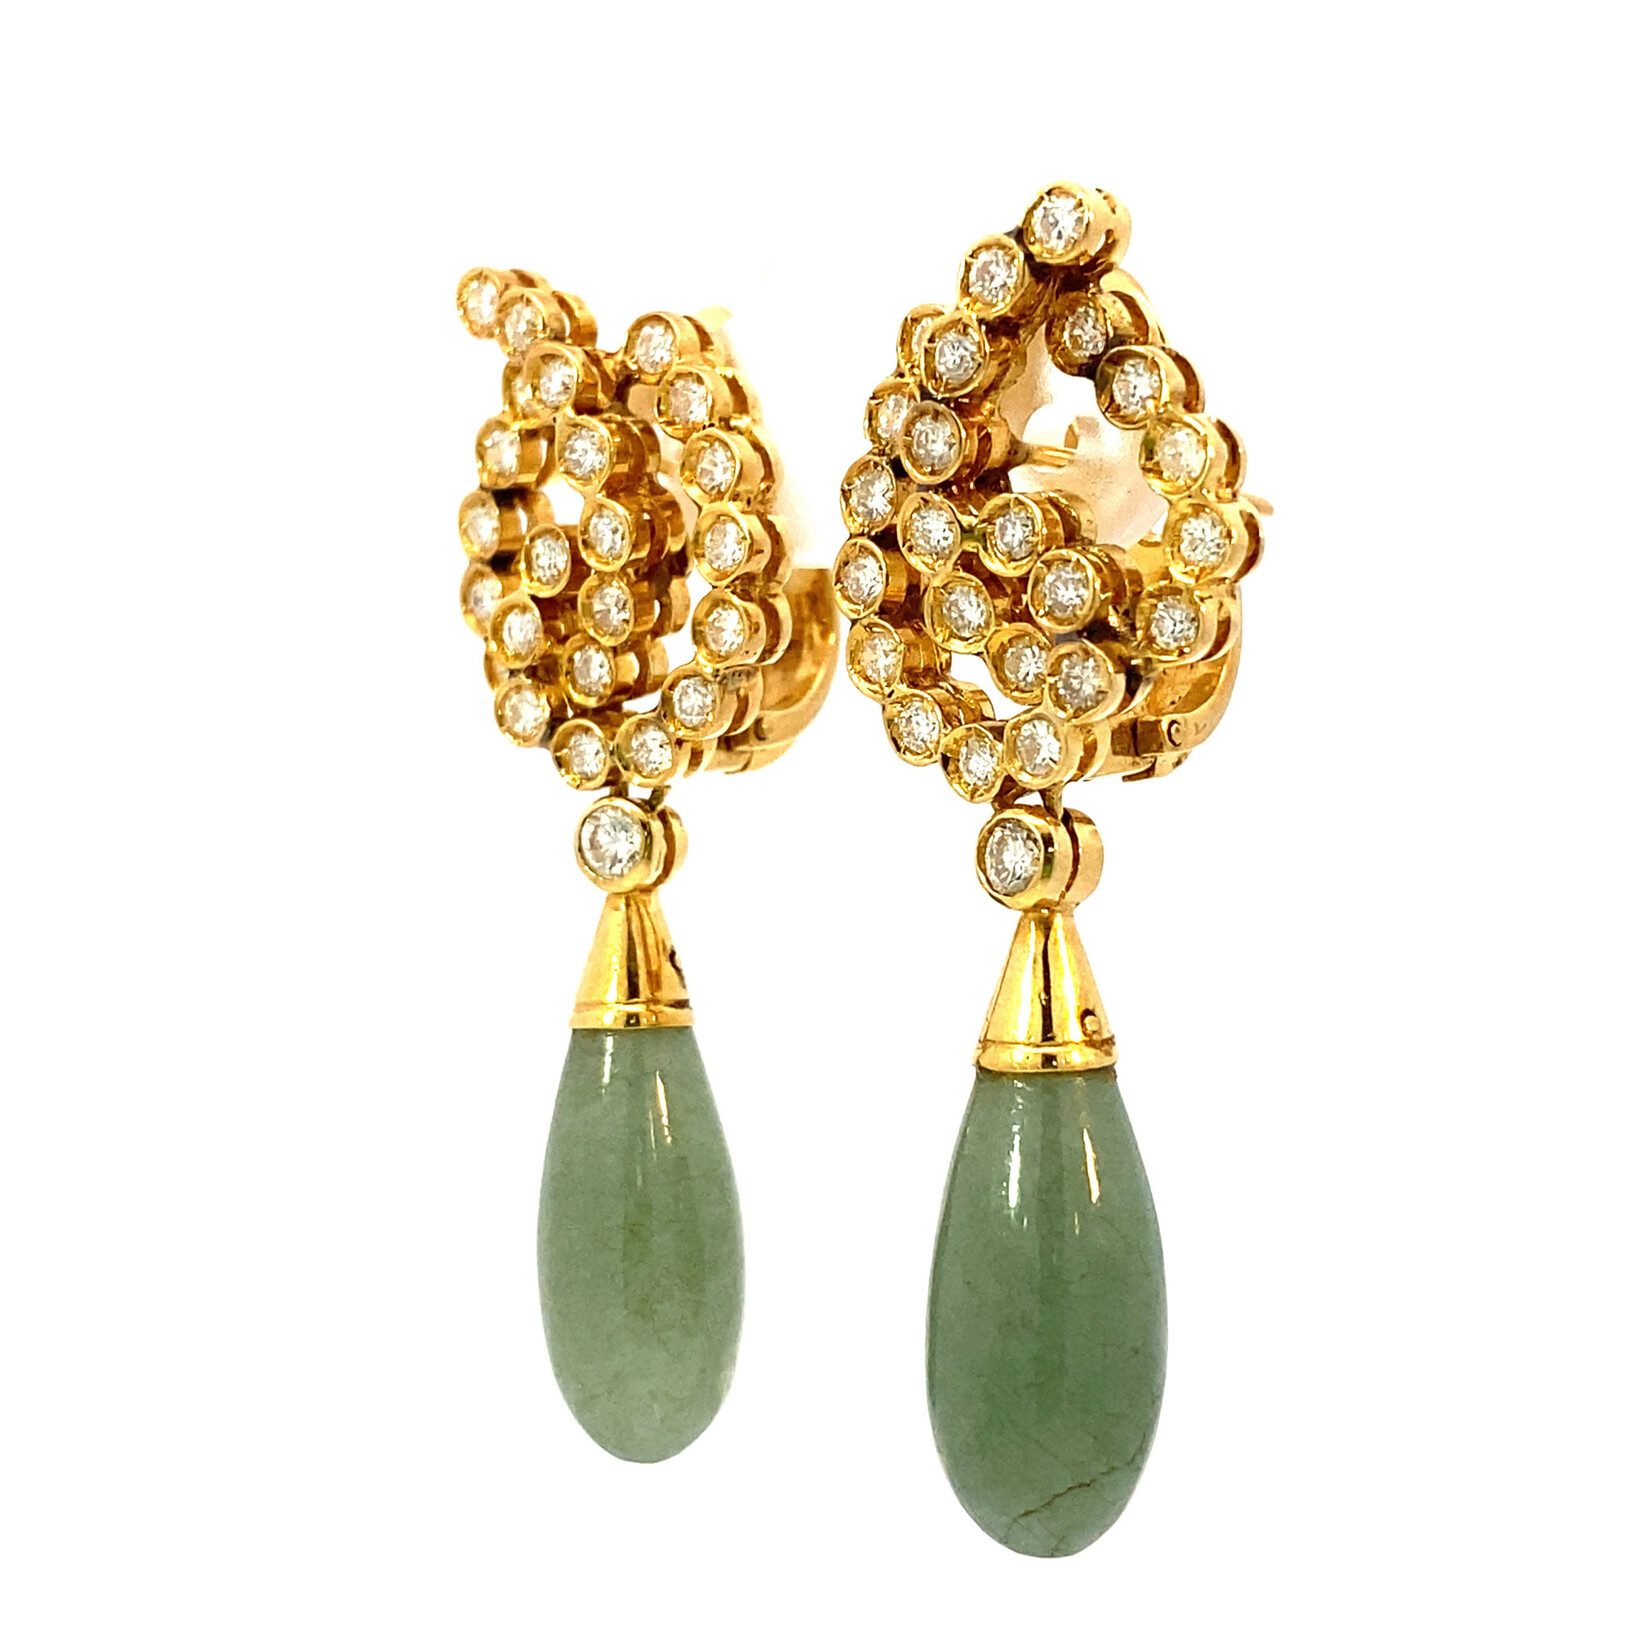 18K Yellow Gold Diamond & Jade earrings on Omega Backs D+/-1.40cttw